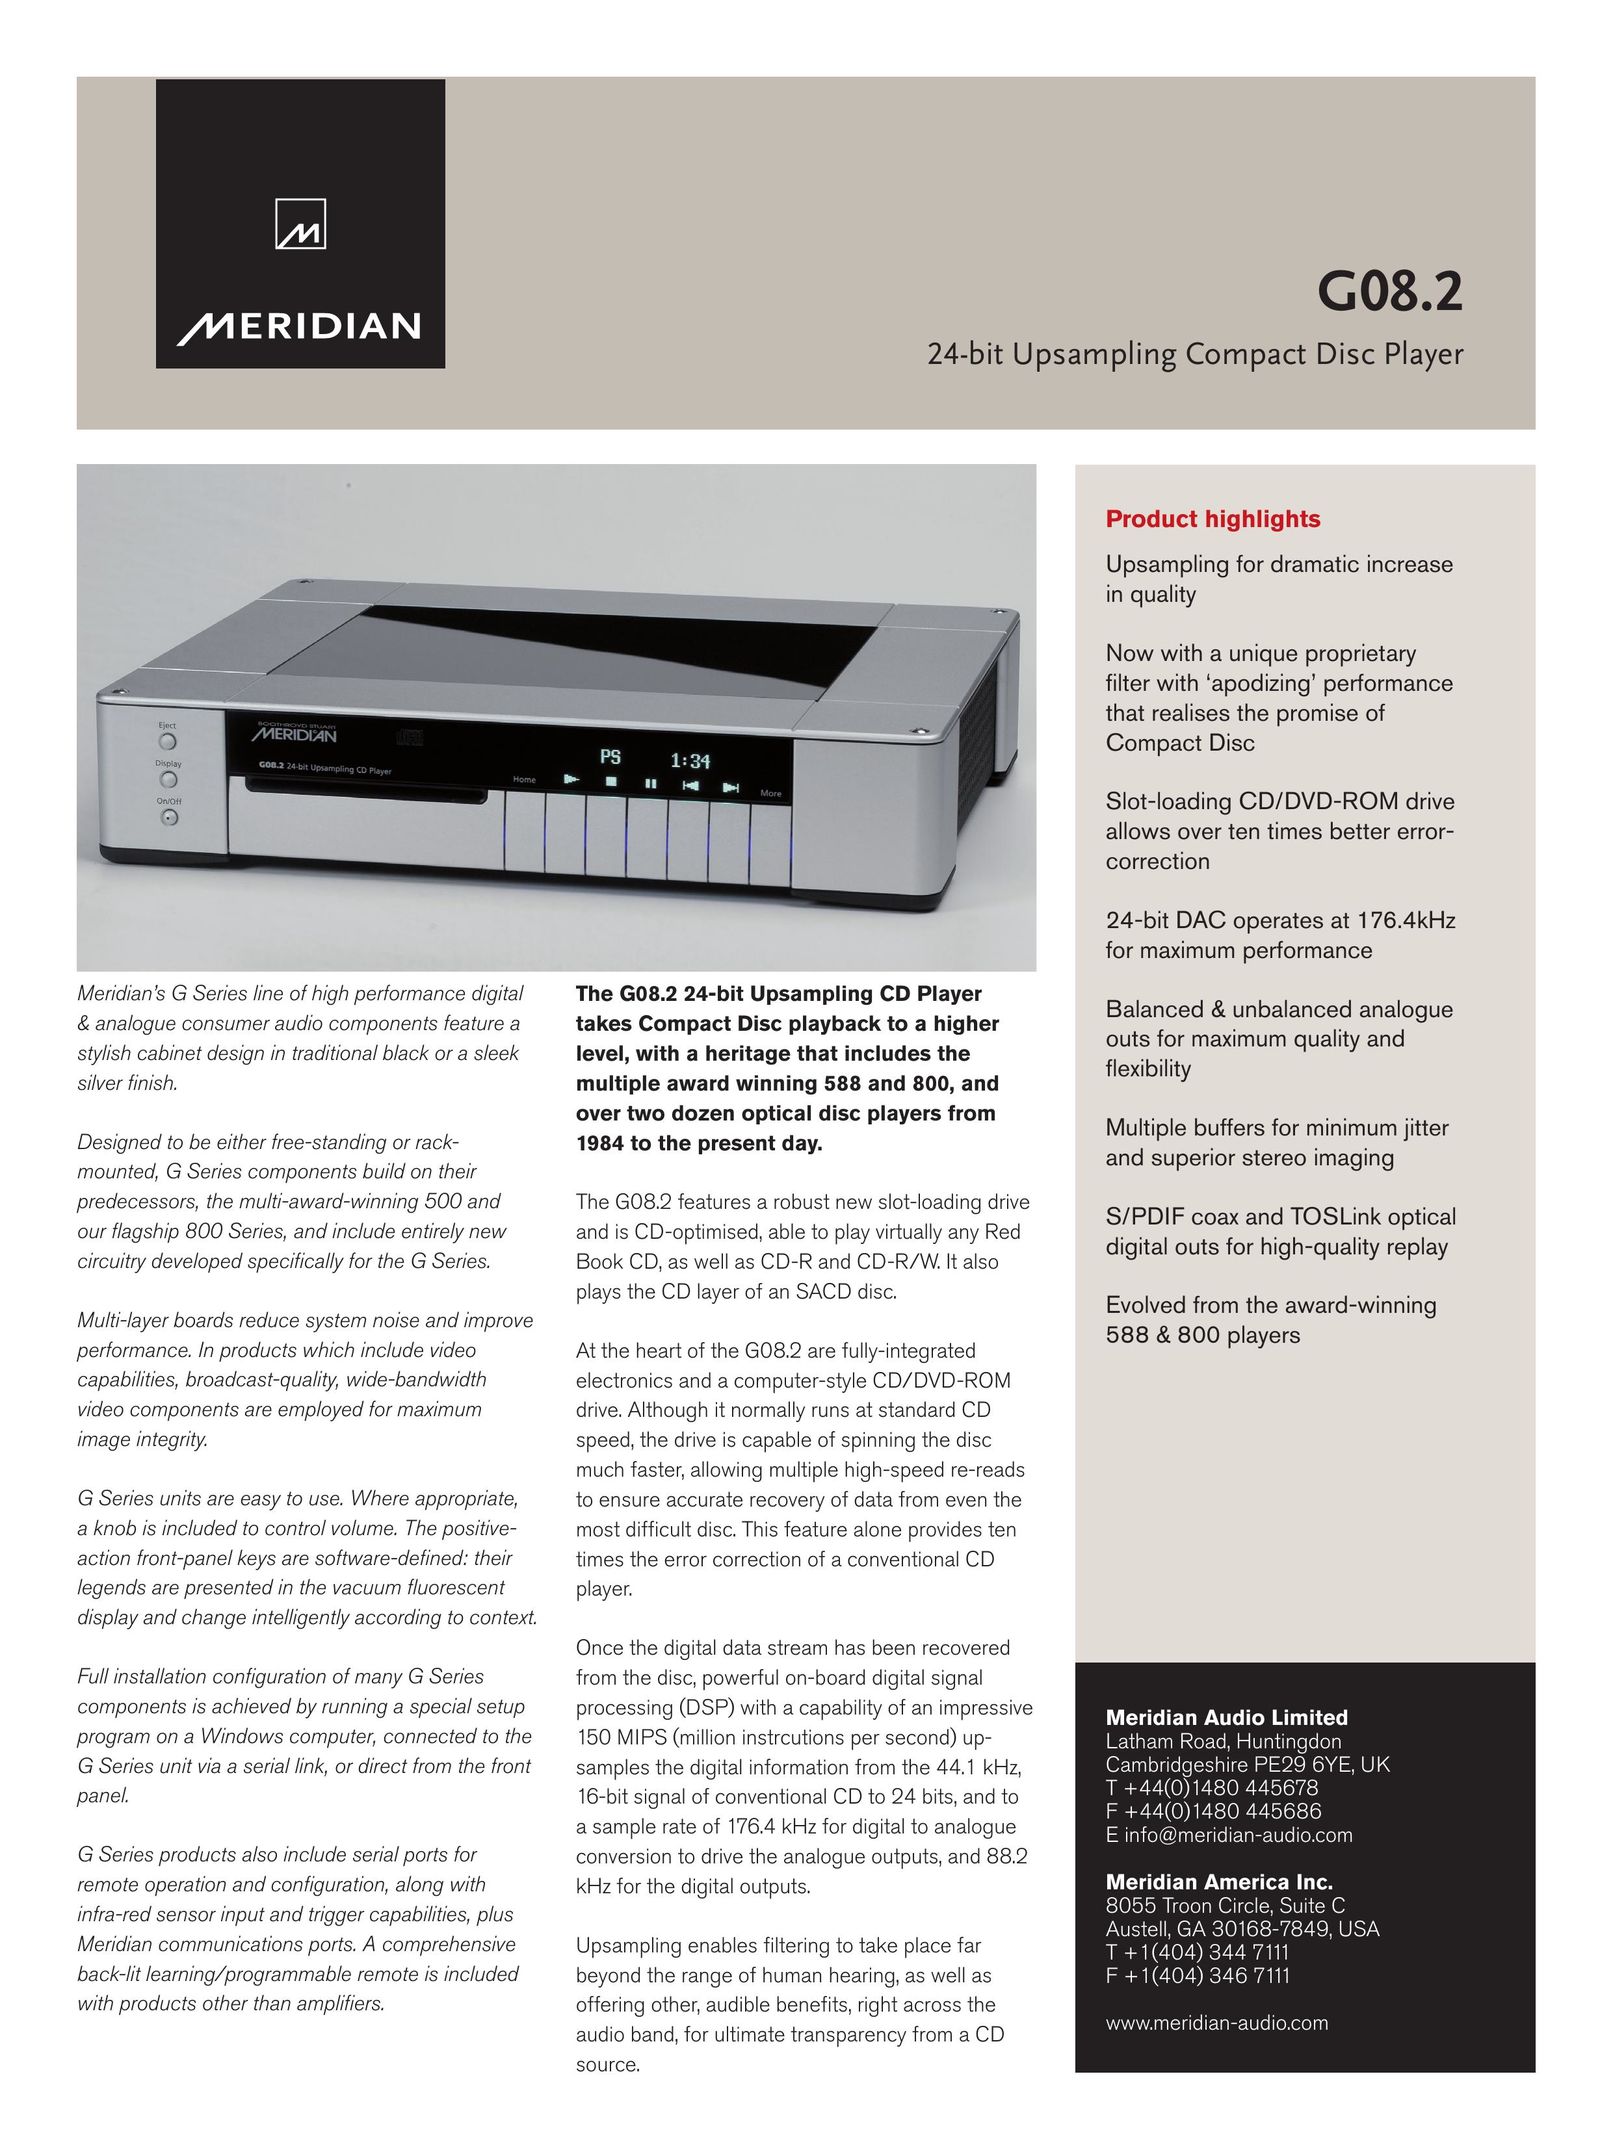 Meridian America G08.2 CD Player User Manual